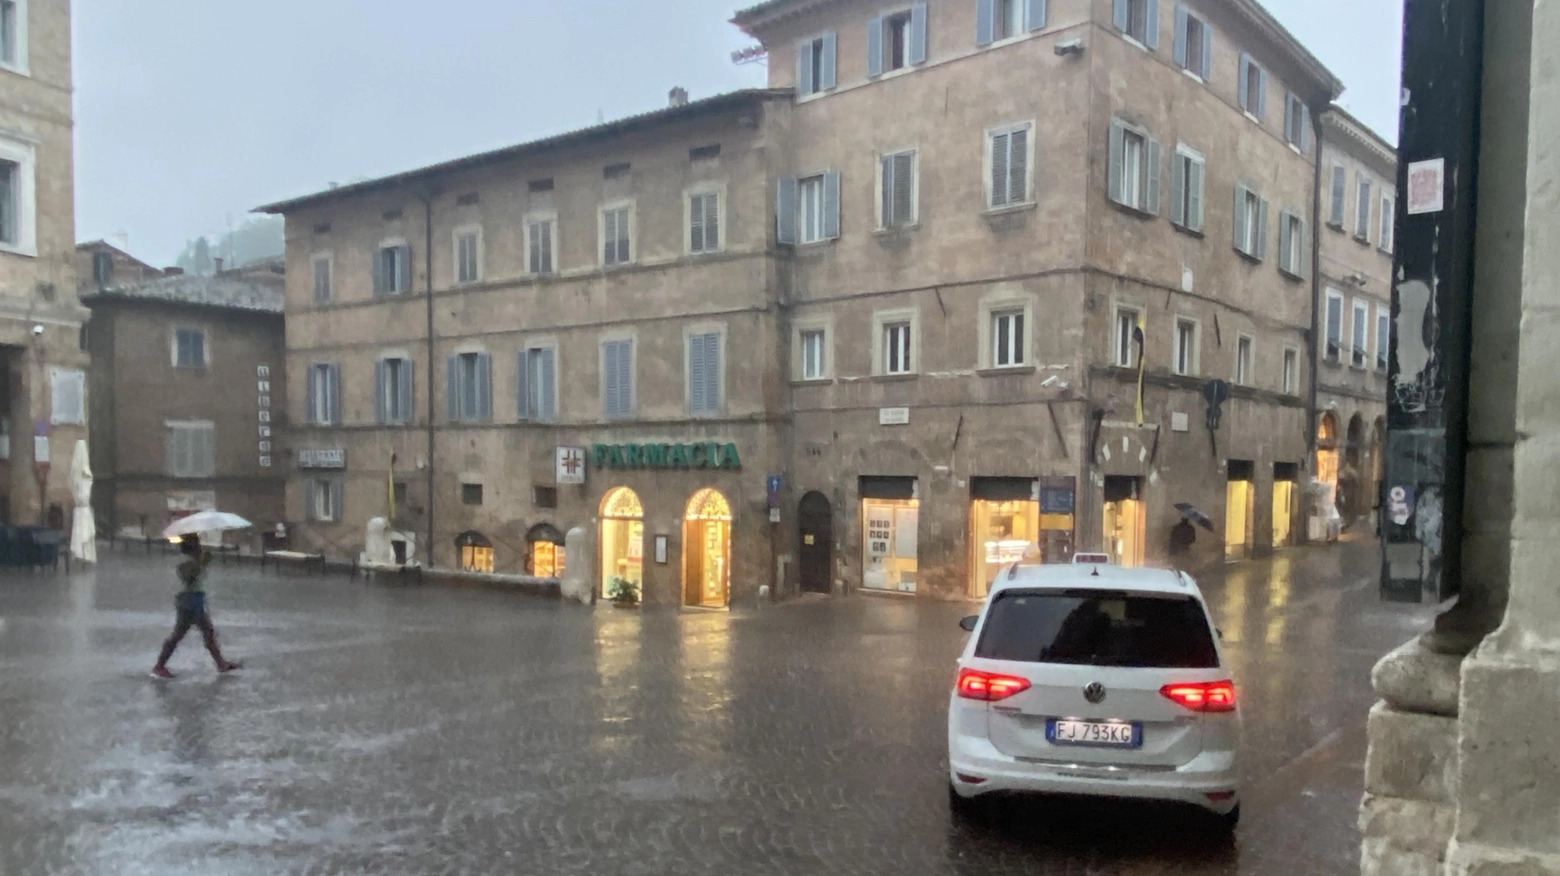 Piove e niente bus:  la trappola della piazza